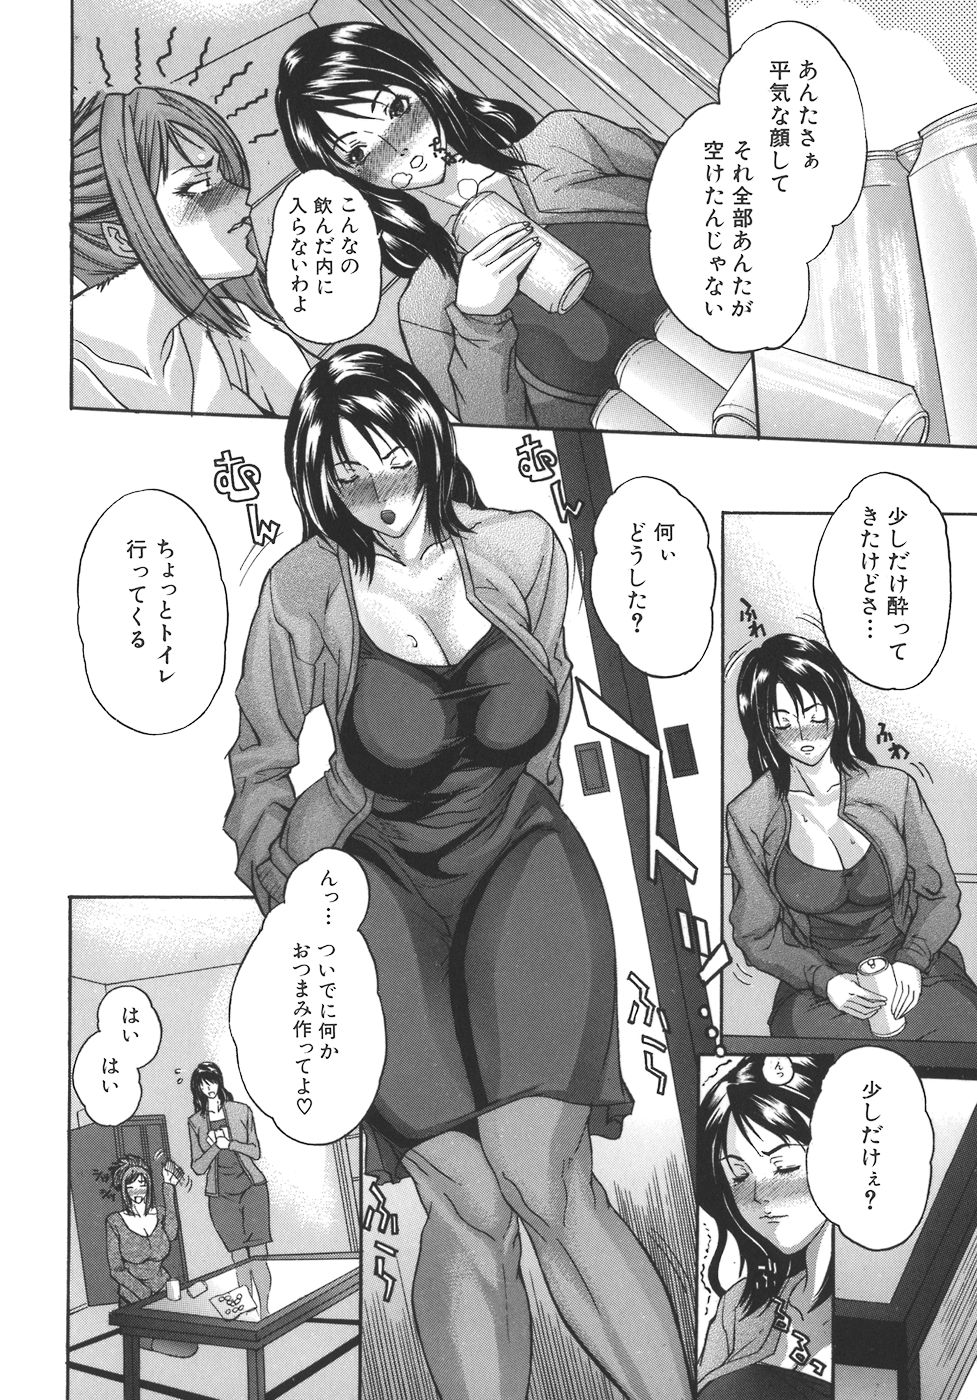 [Sawada Daisuke] Mamagoto page 6 full